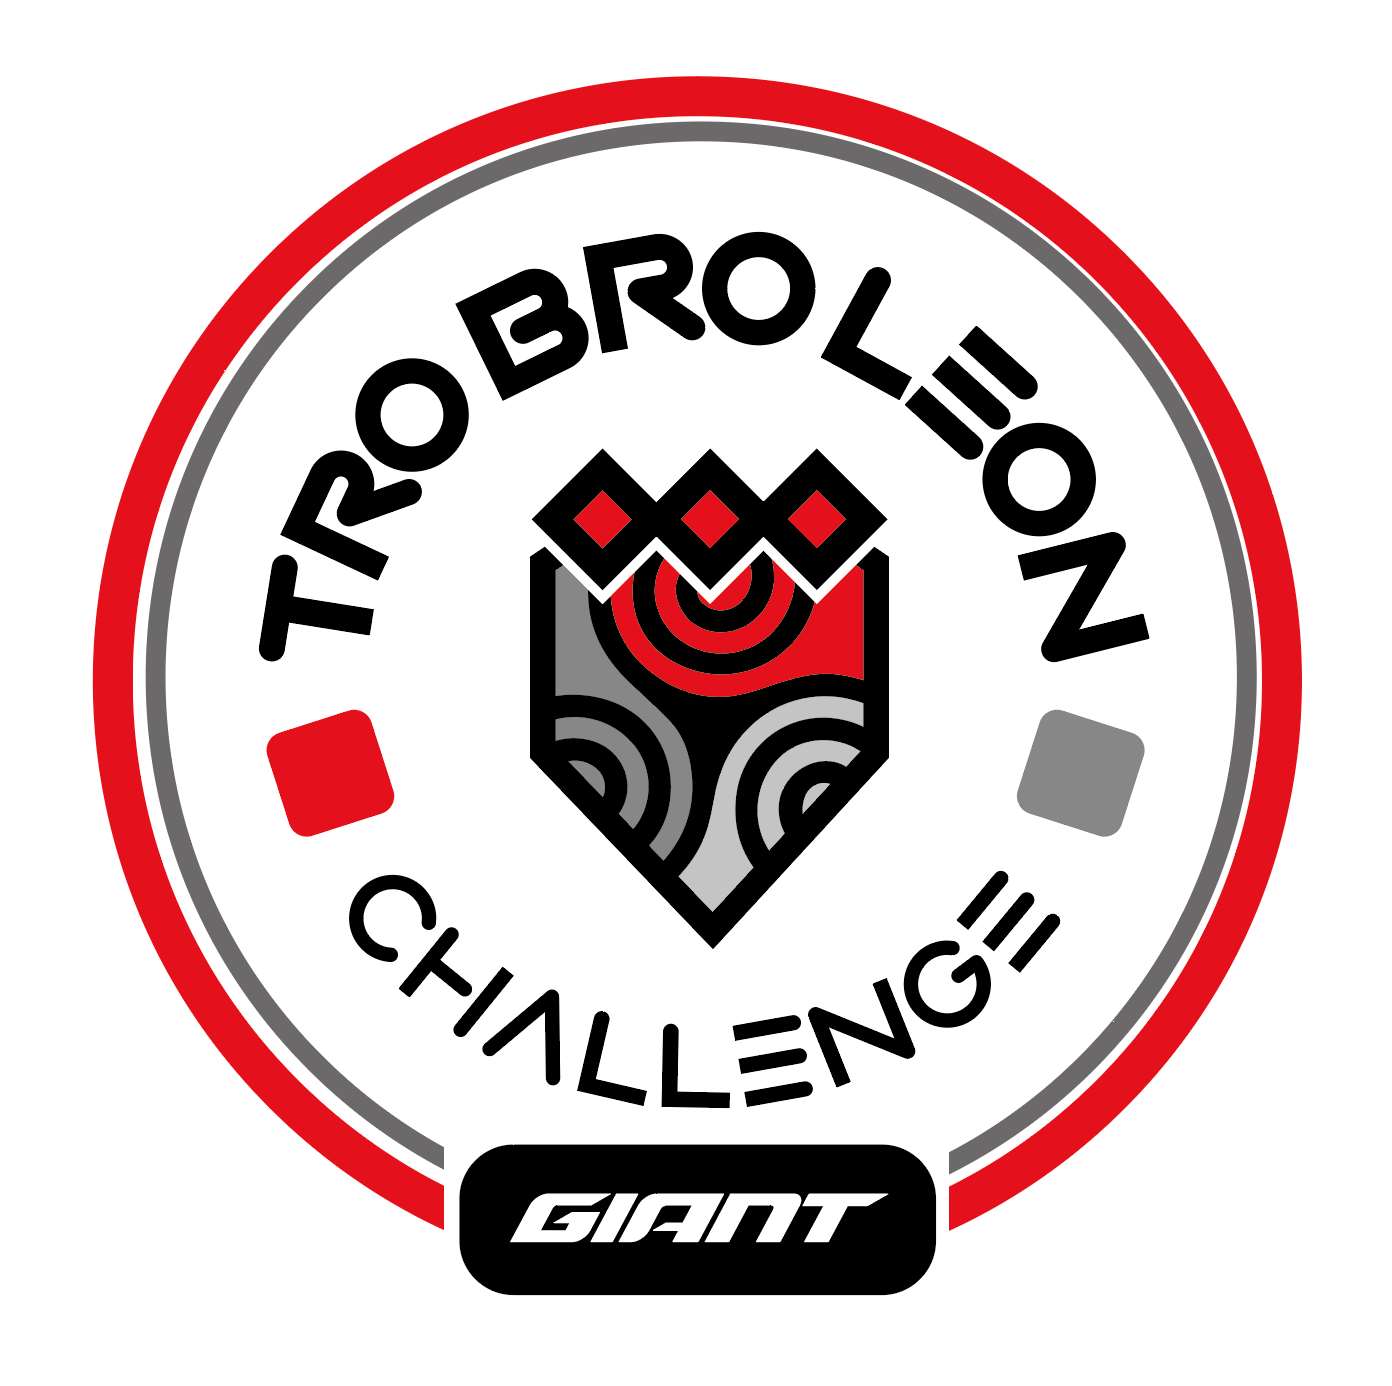 Tro Bro Leon Challenge